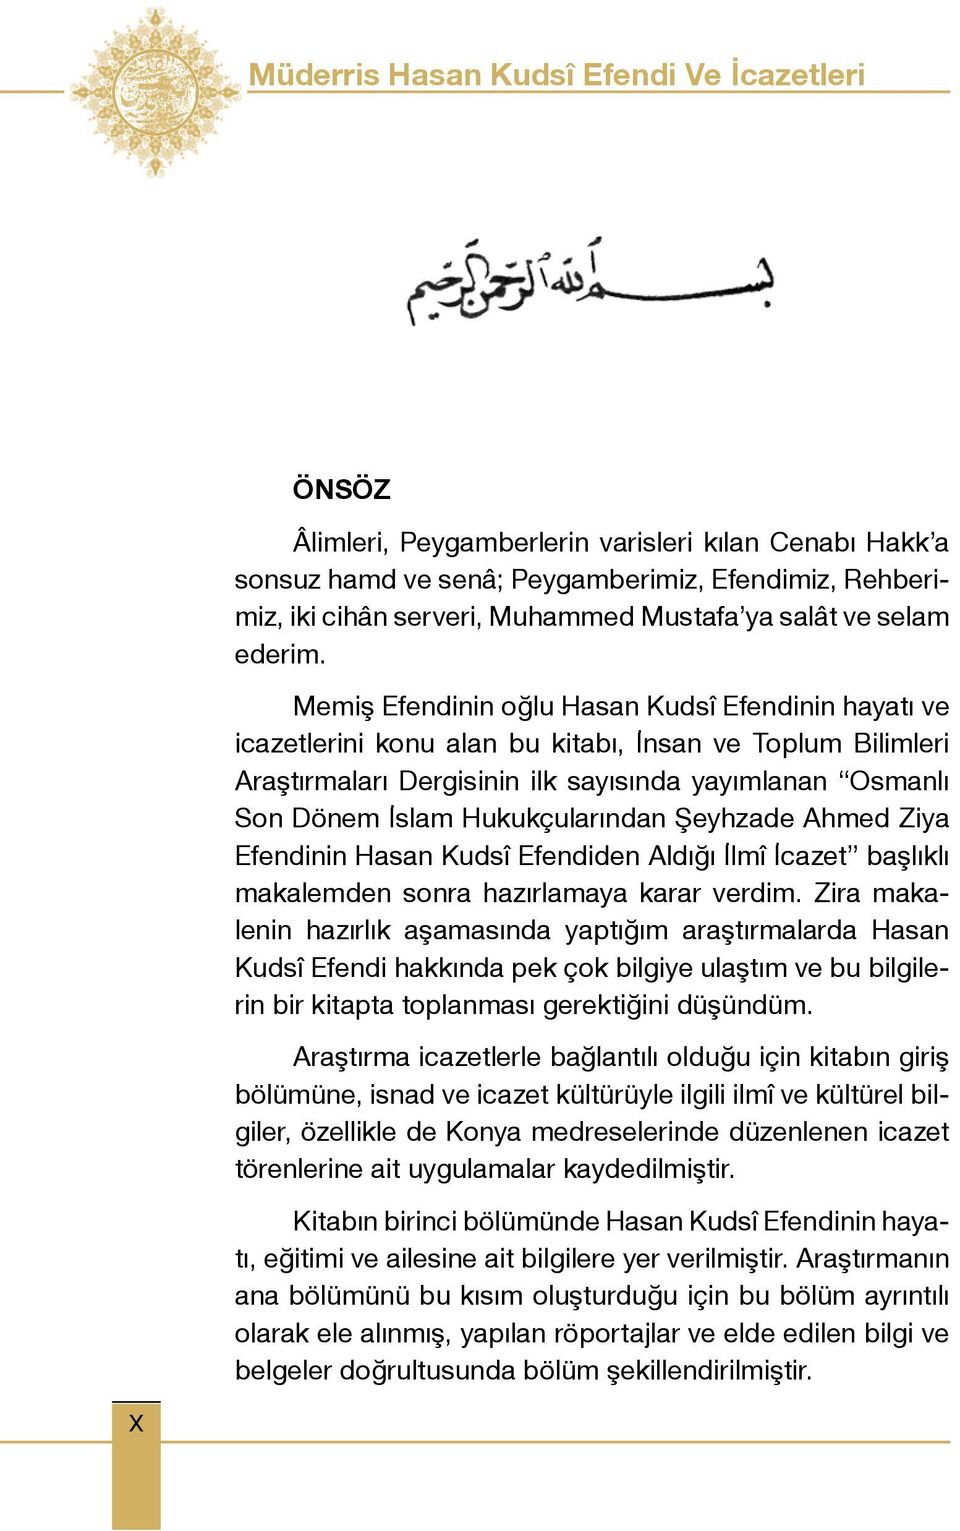 Memiş Efendinin oğlu Hasan Kudsî Efendinin hayatı ve icazetlerini konu alan bu kitabı, İnsan ve Toplum Bilimleri Araştırmaları Dergisinin ilk sayısında yayımlanan Osmanlı Son Dönem İslam